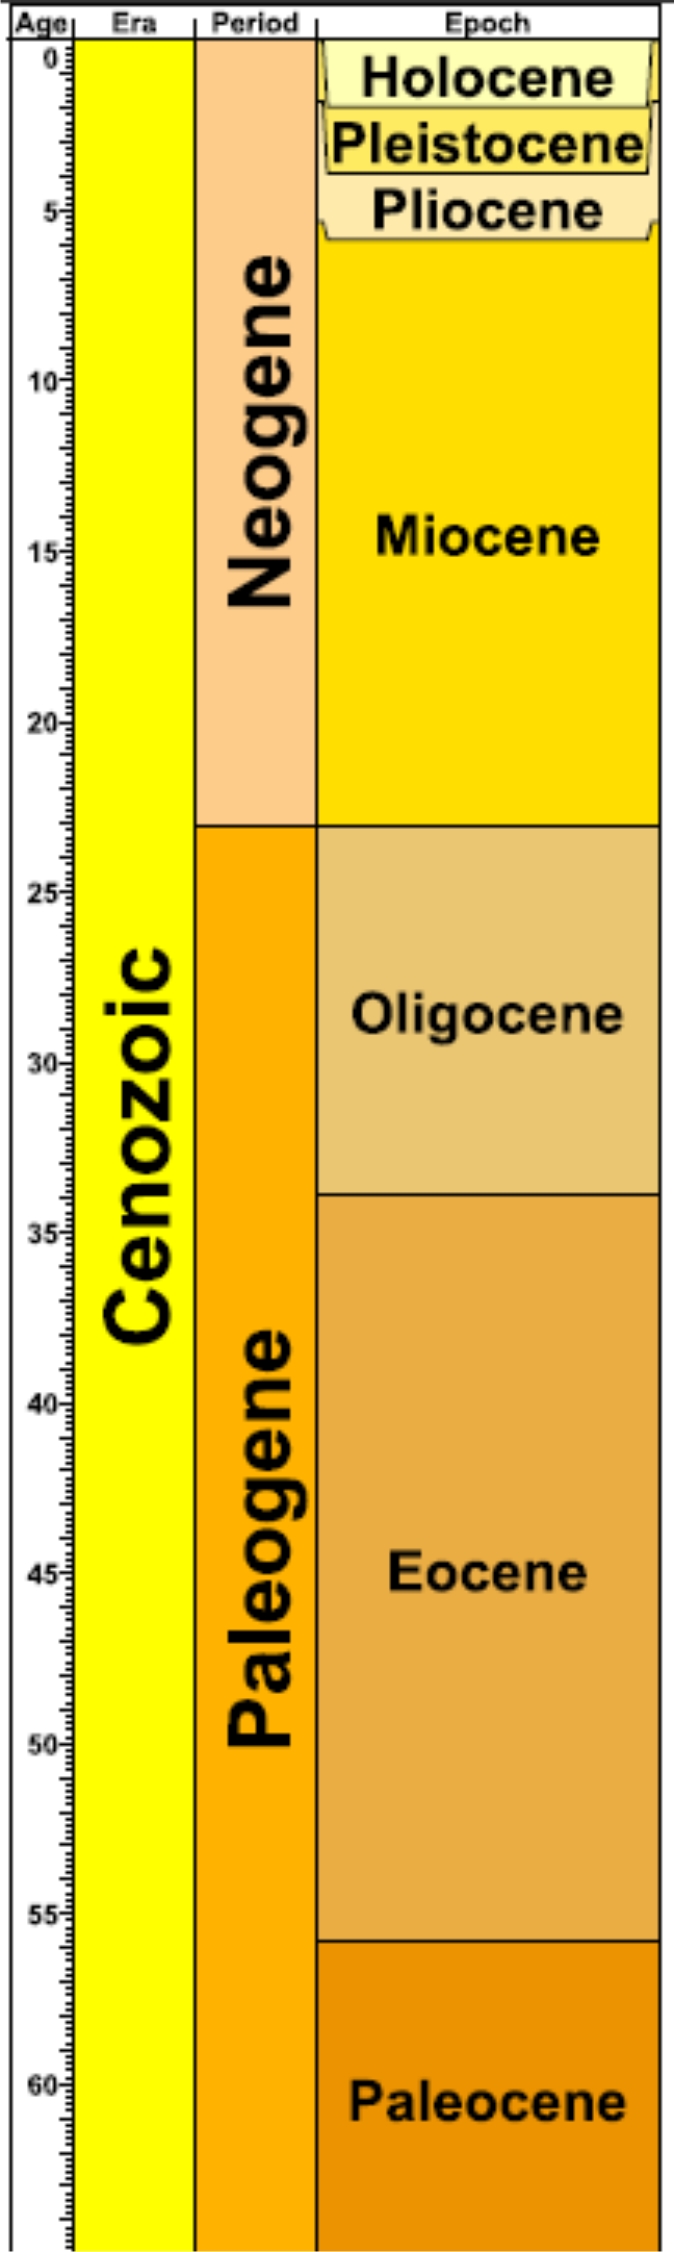 miocene period